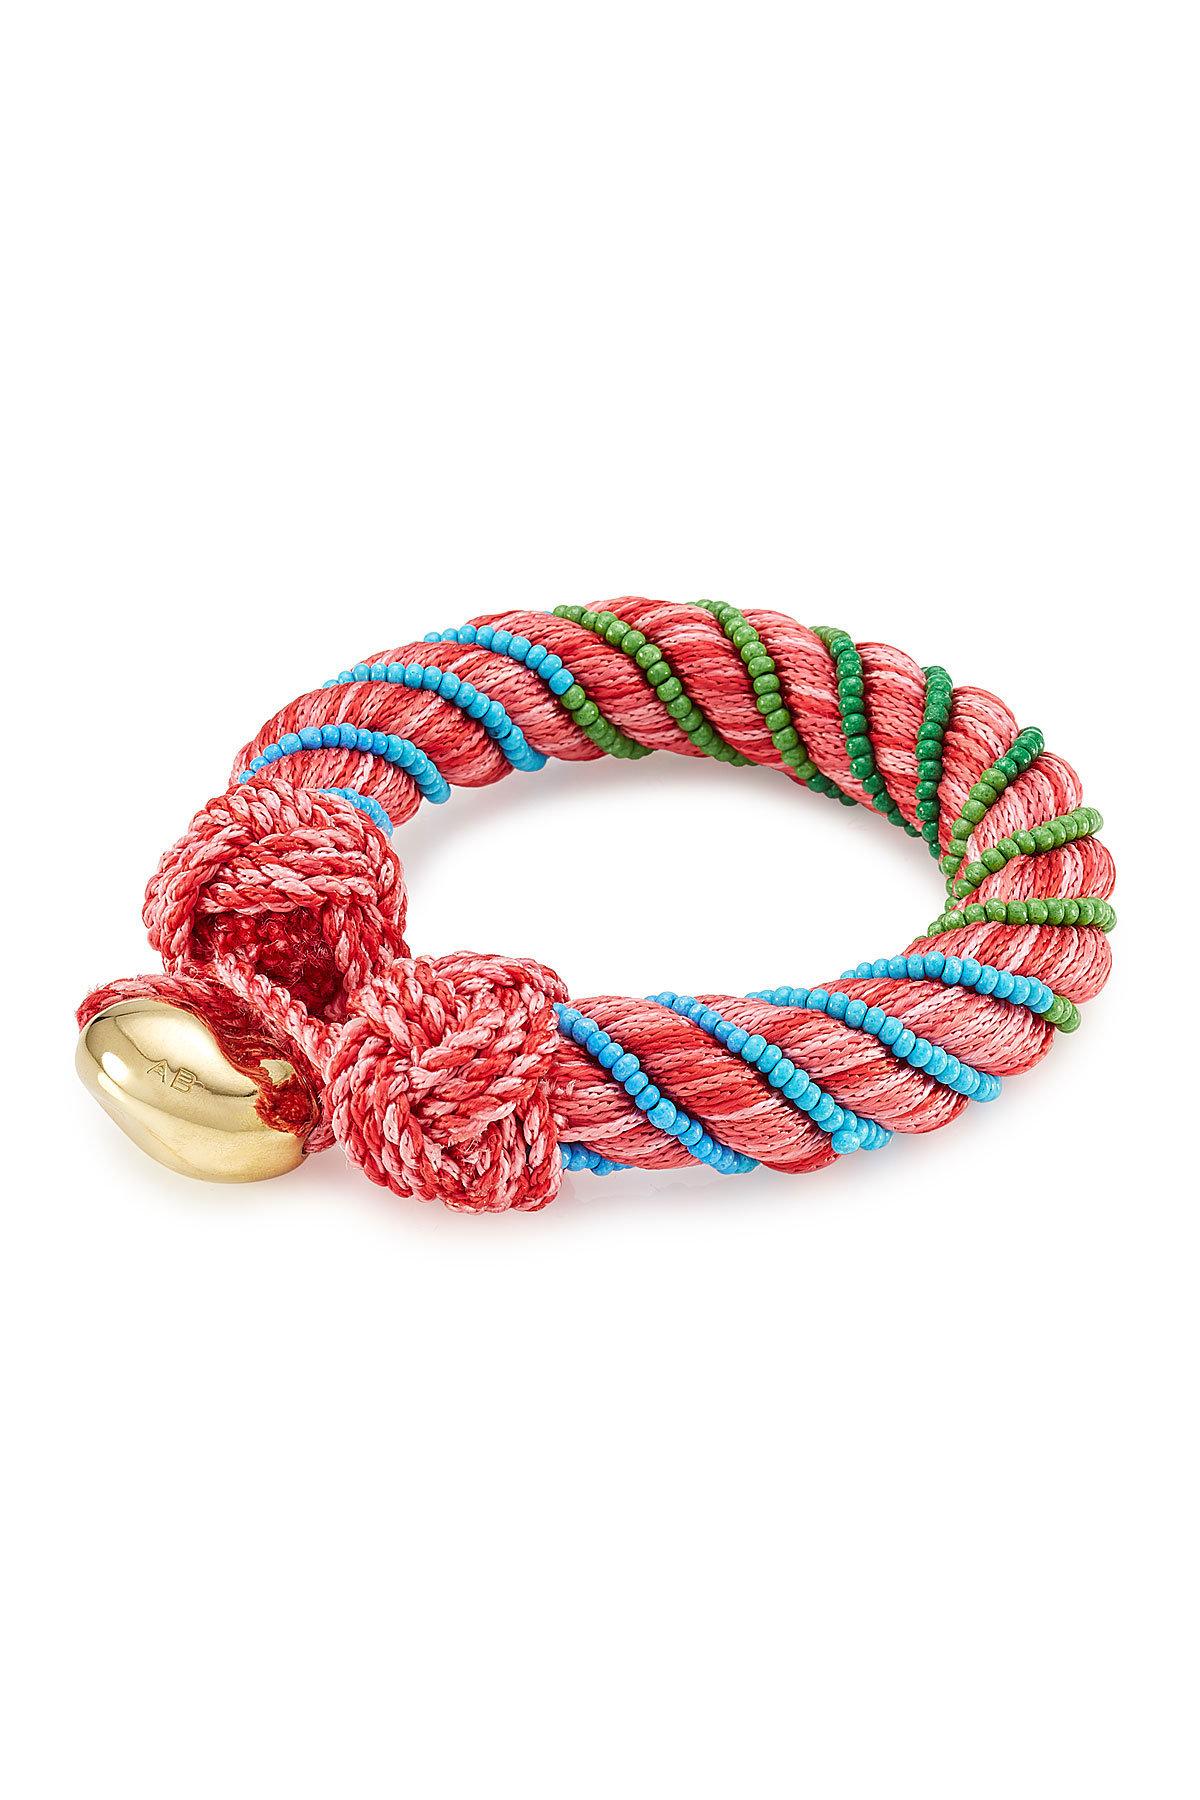 Aurelie Bidermann Bracelet With Glass Beads in Pink - Lyst